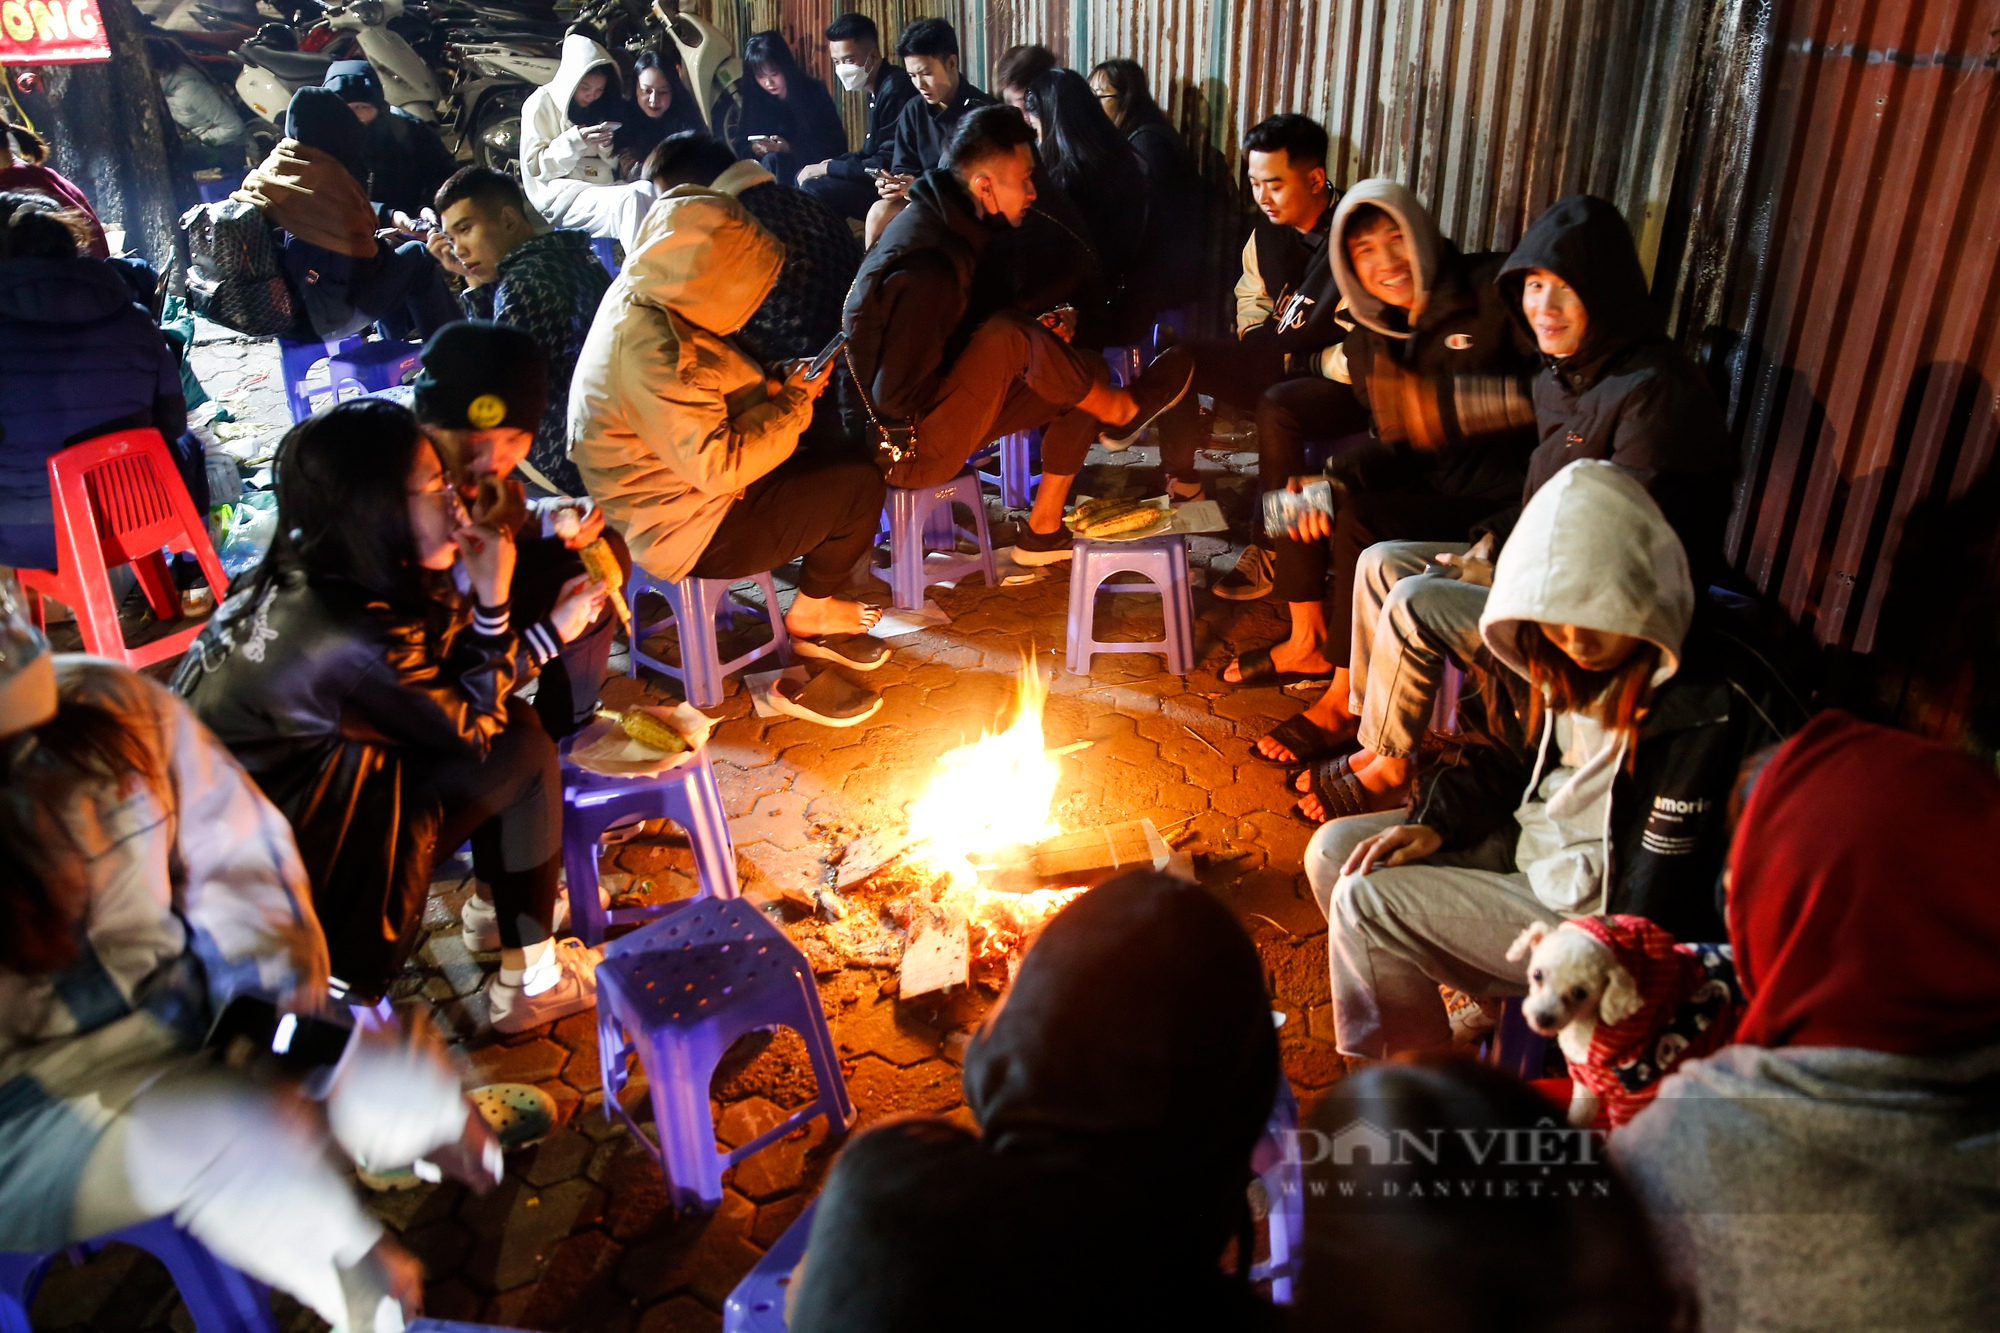 Giới trẻ Hà Nội đổ xô ra hồ Tây sưởi ấm, ăn ngô nướng giữa đêm đông lạnh giá - Ảnh 1.